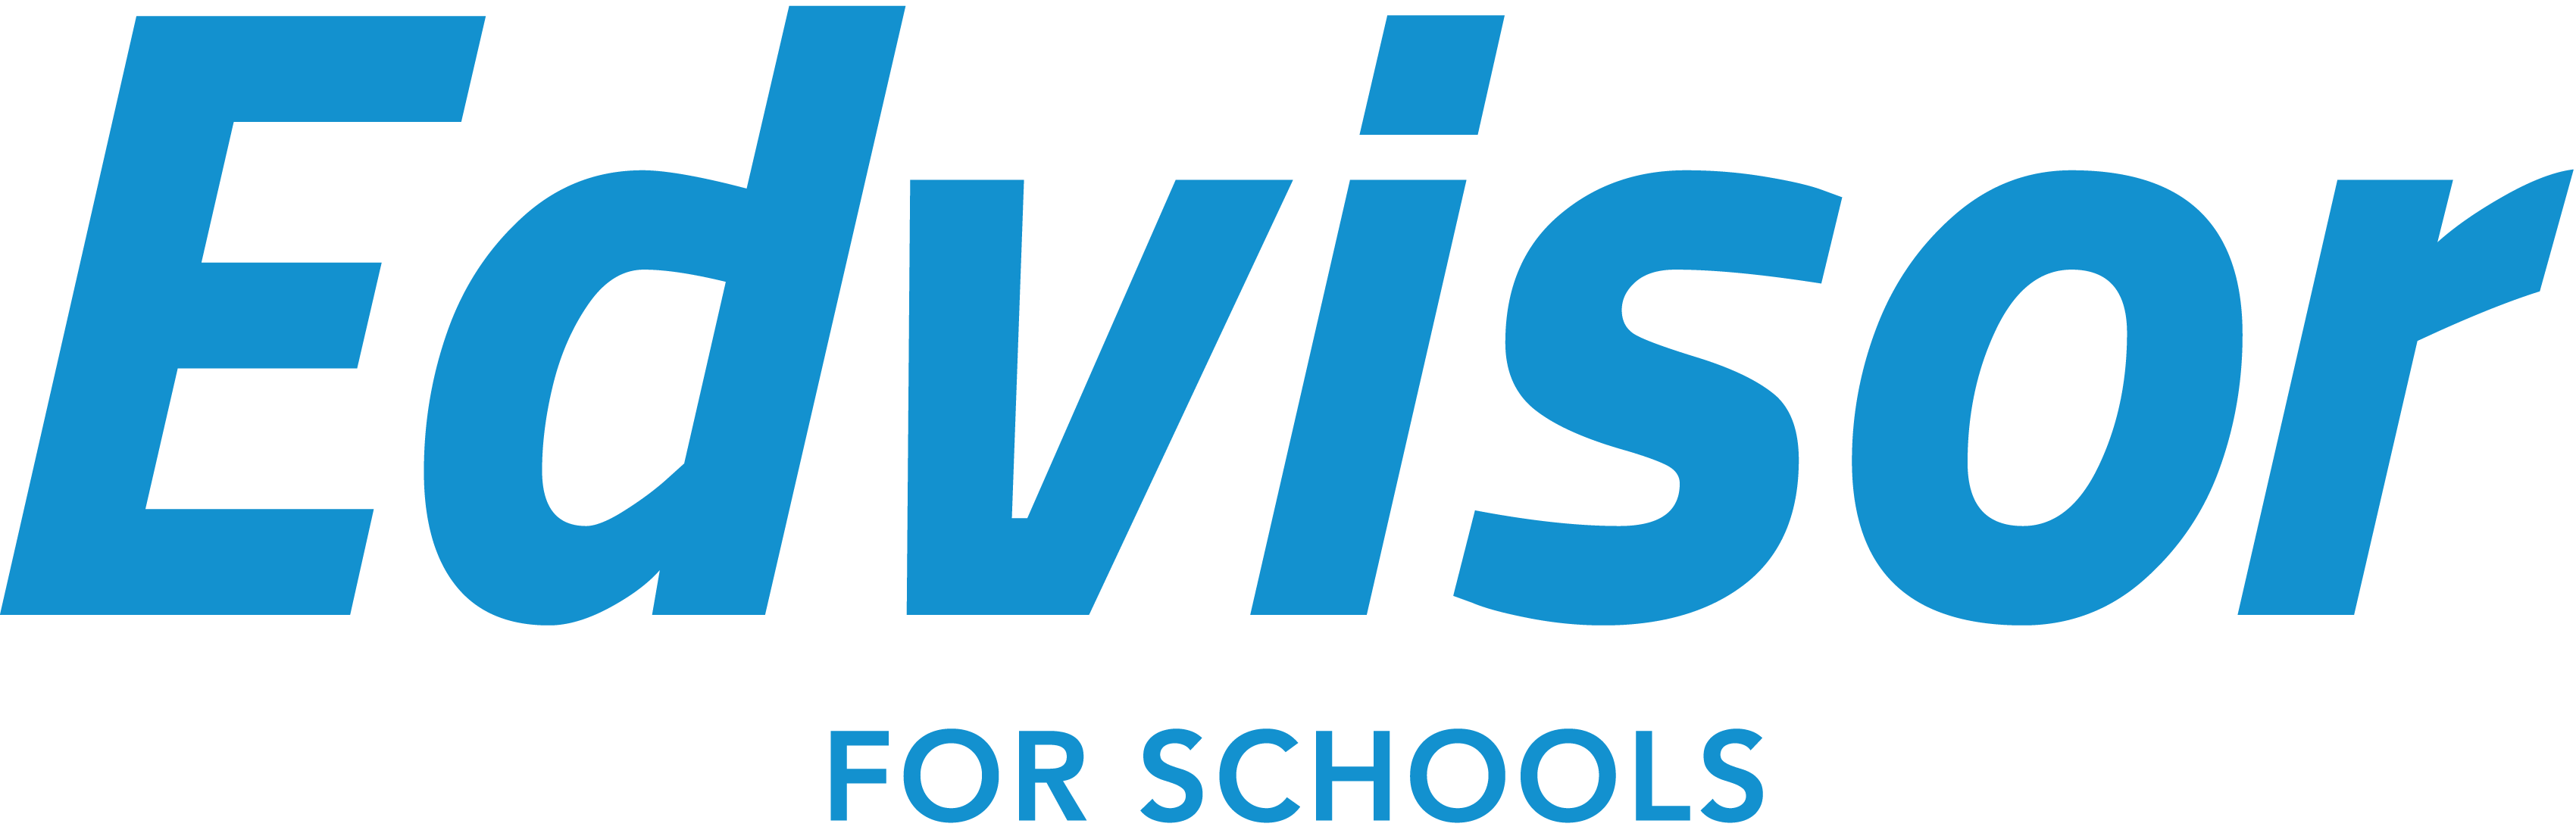 Edvisor-School-Logo-Center.png